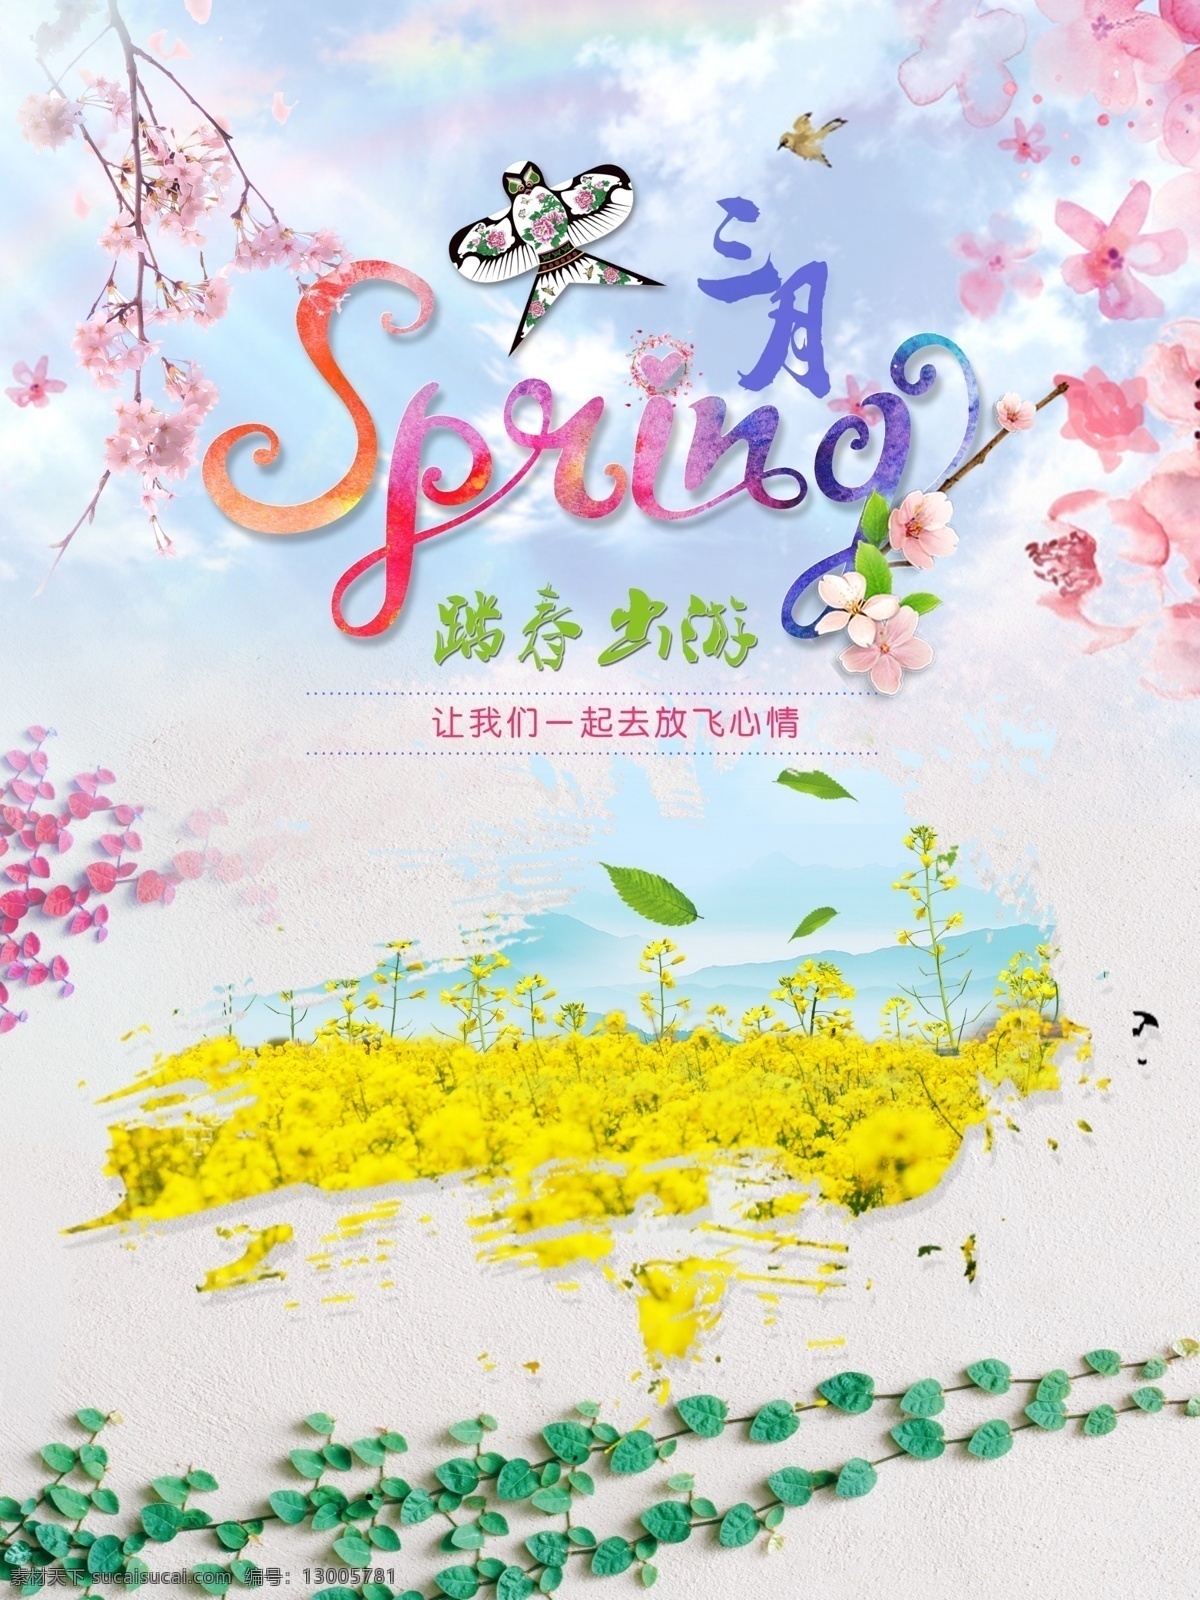 三月 春季 旅游 海报 宣传海报 清新 唯美 春天 你好 踏春 初春 花 植物 桃花